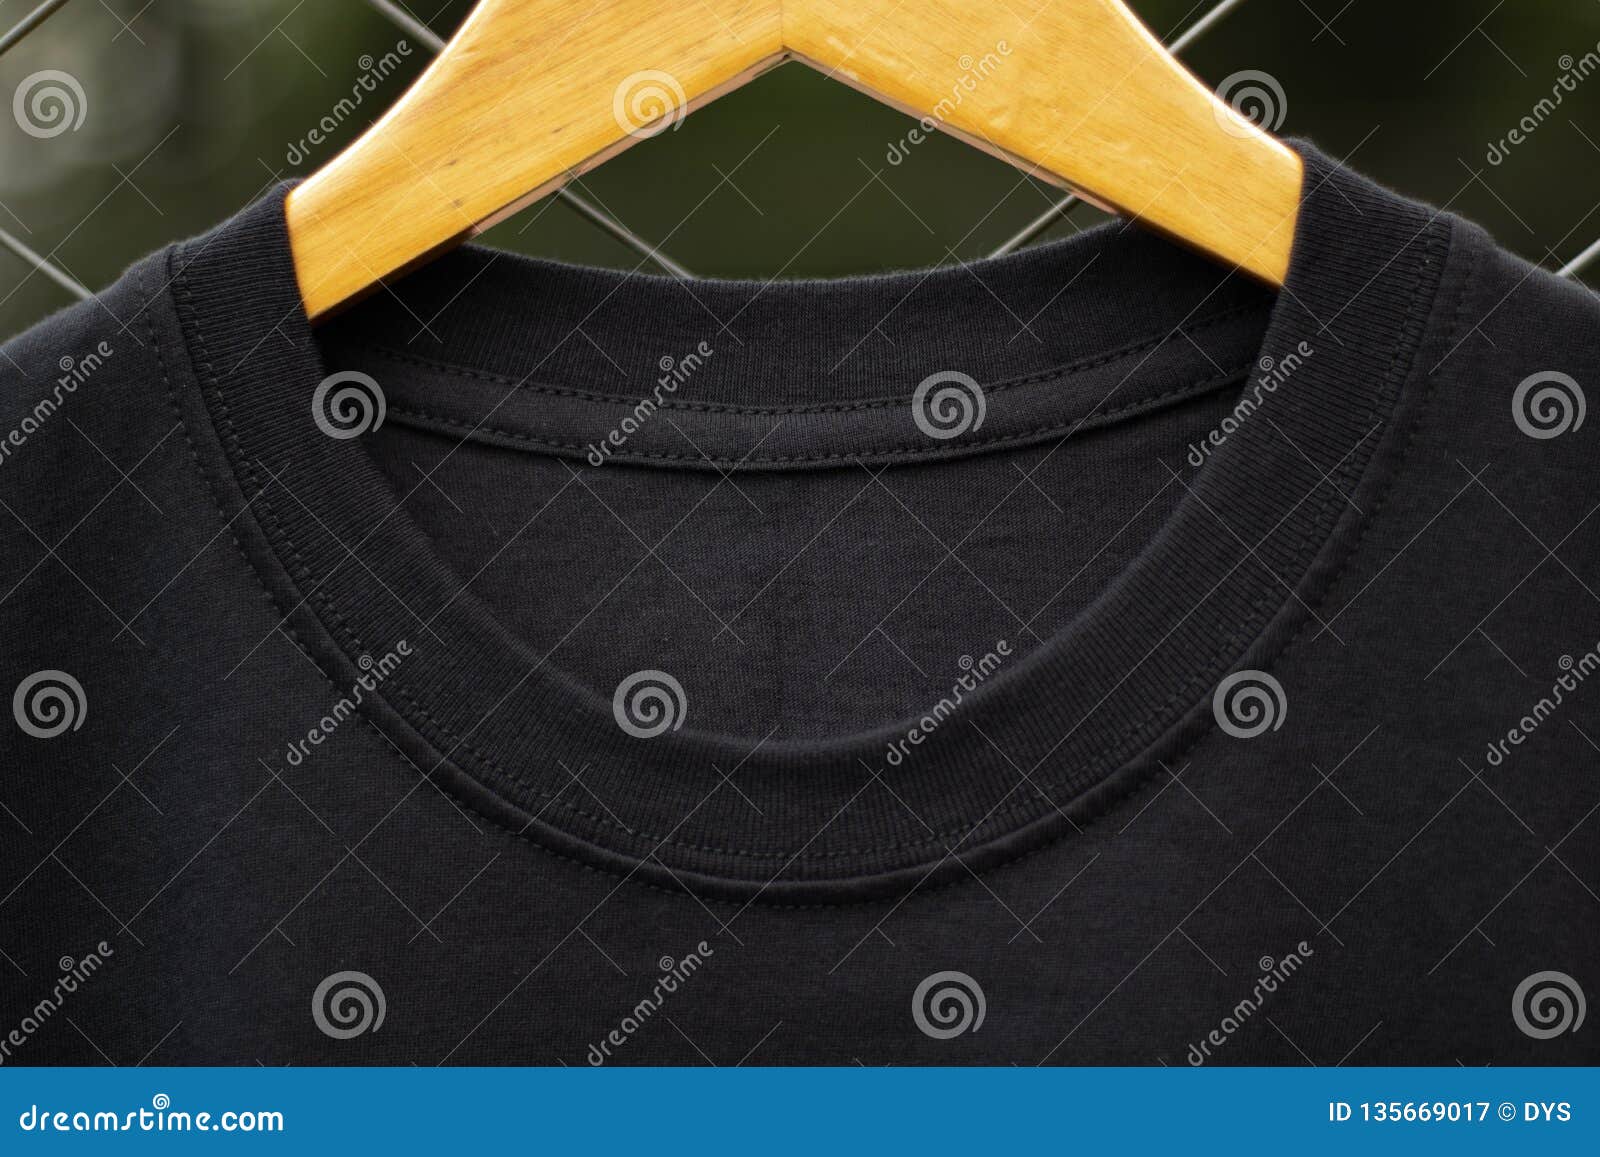 Download Blank Black T-shirt Basic For Mock Up Design Stock Image ...